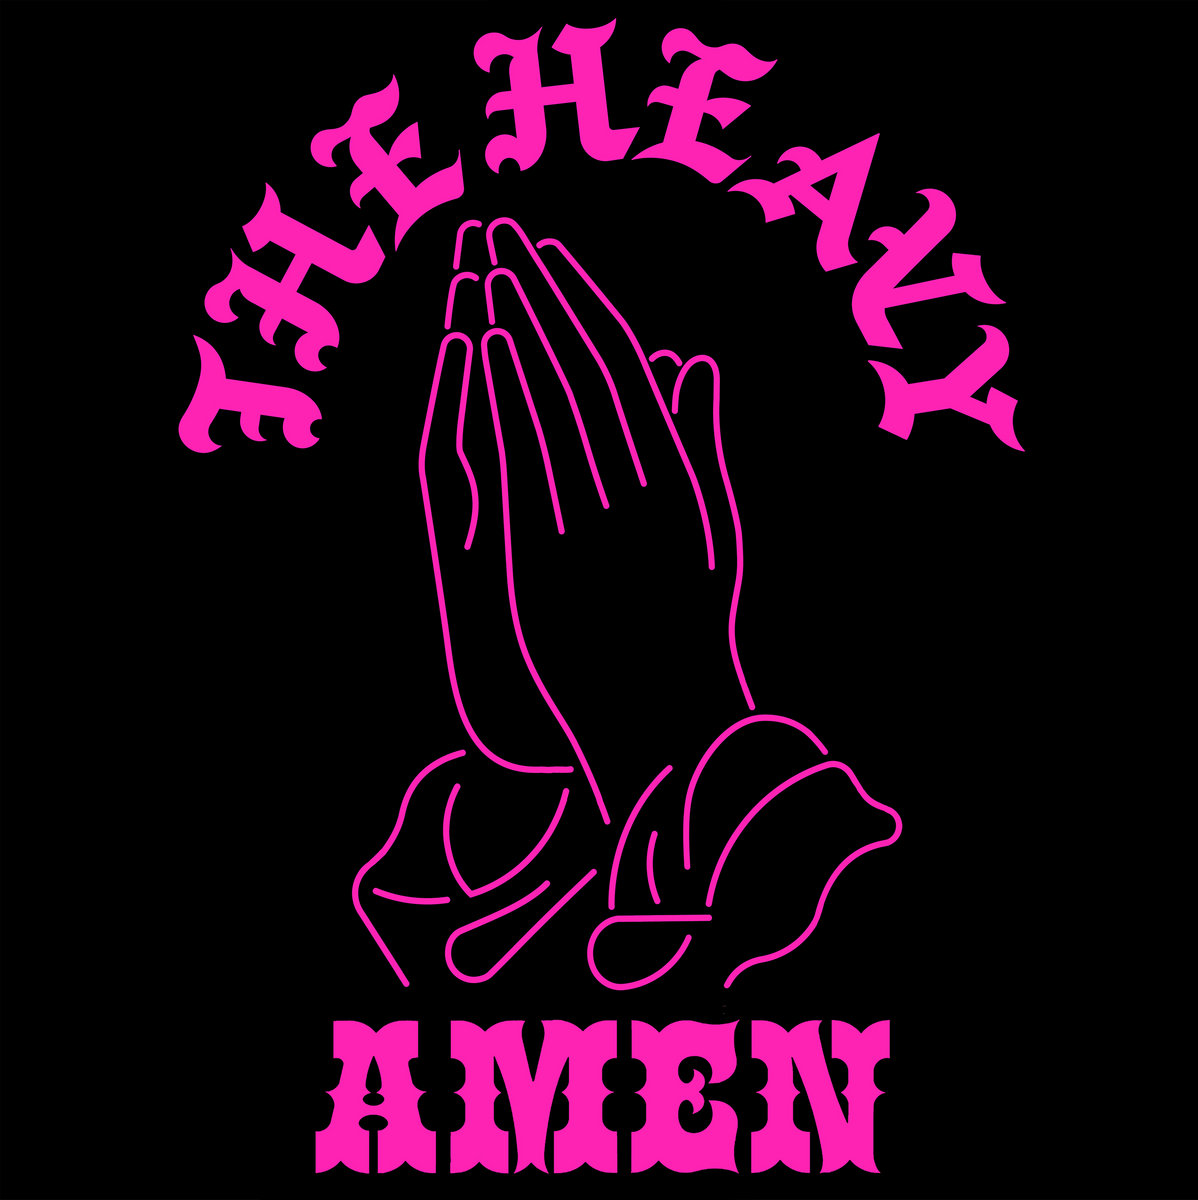 The Heavy Amen cover artwork